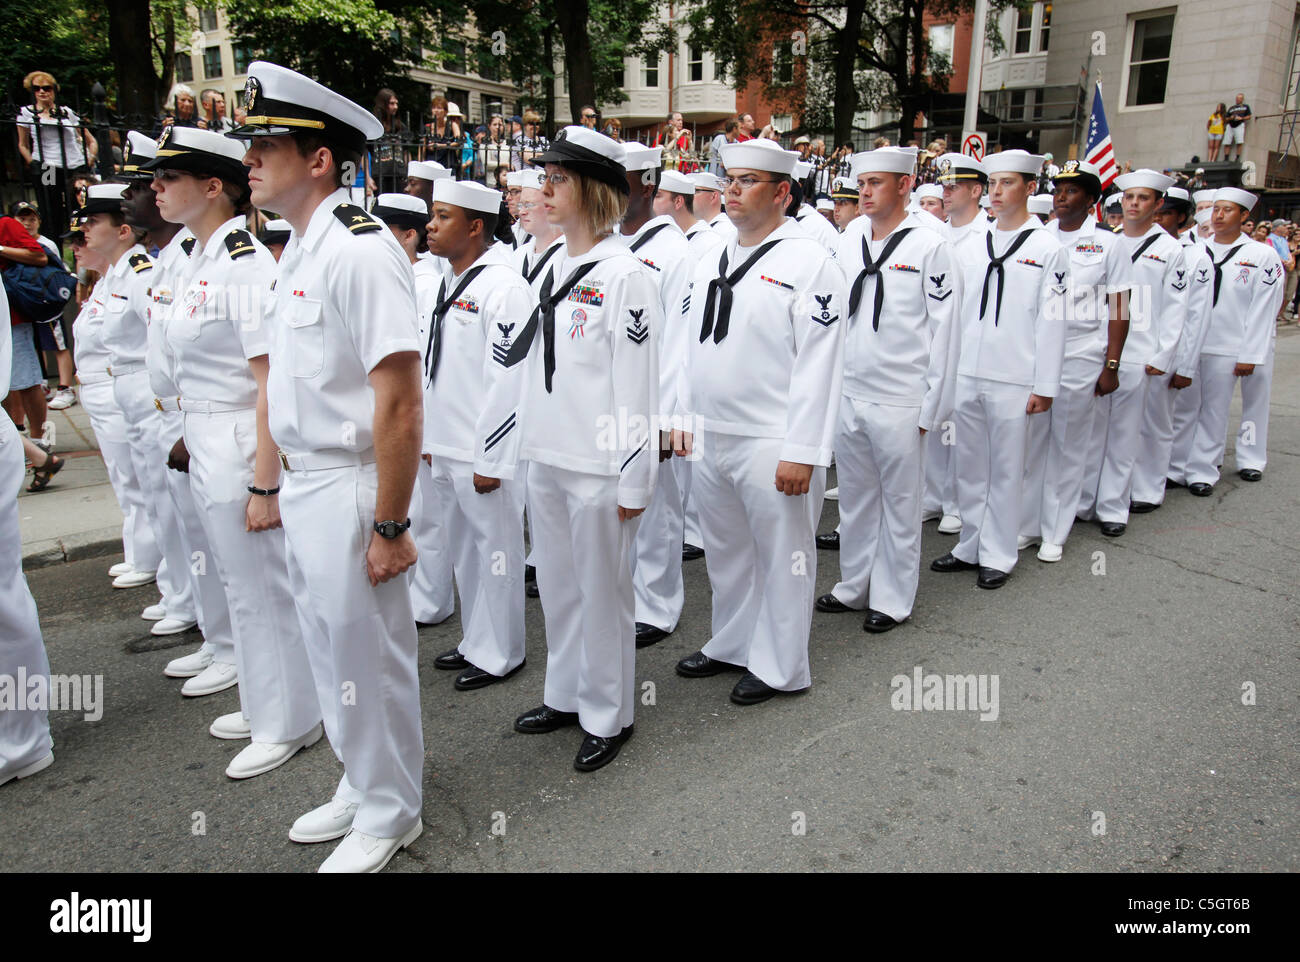 US Navy Matrosen in Bildung, 4. Juli Parade, Boston, Massachusetts Stockfoto